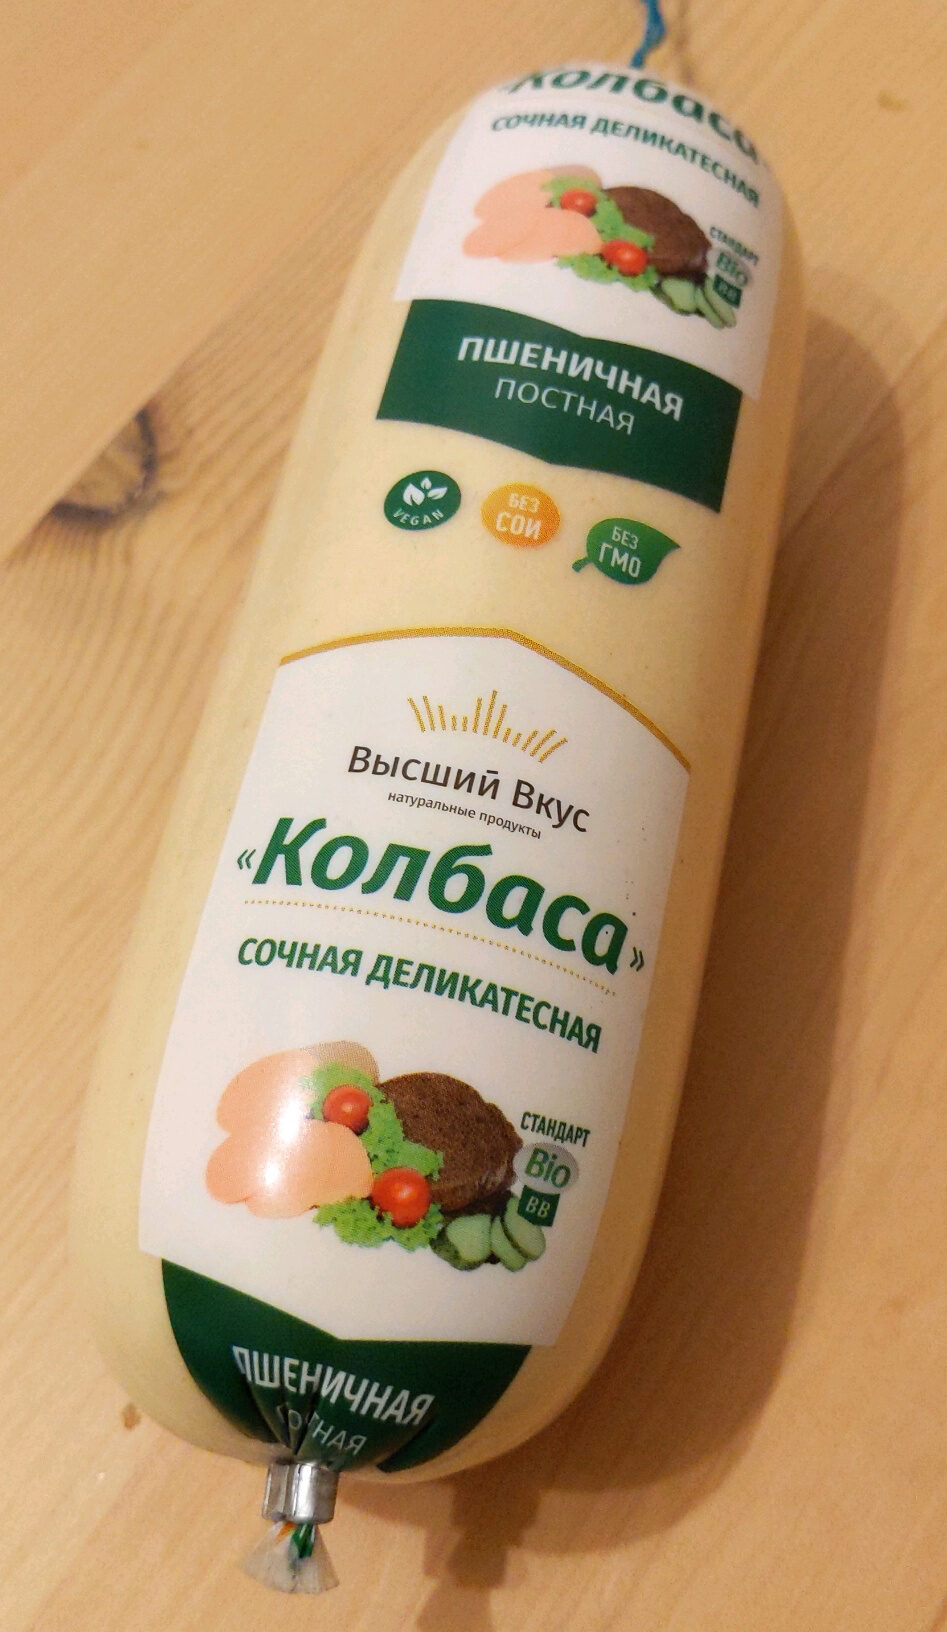 Колбаса сочная деликатесная - Product - ru